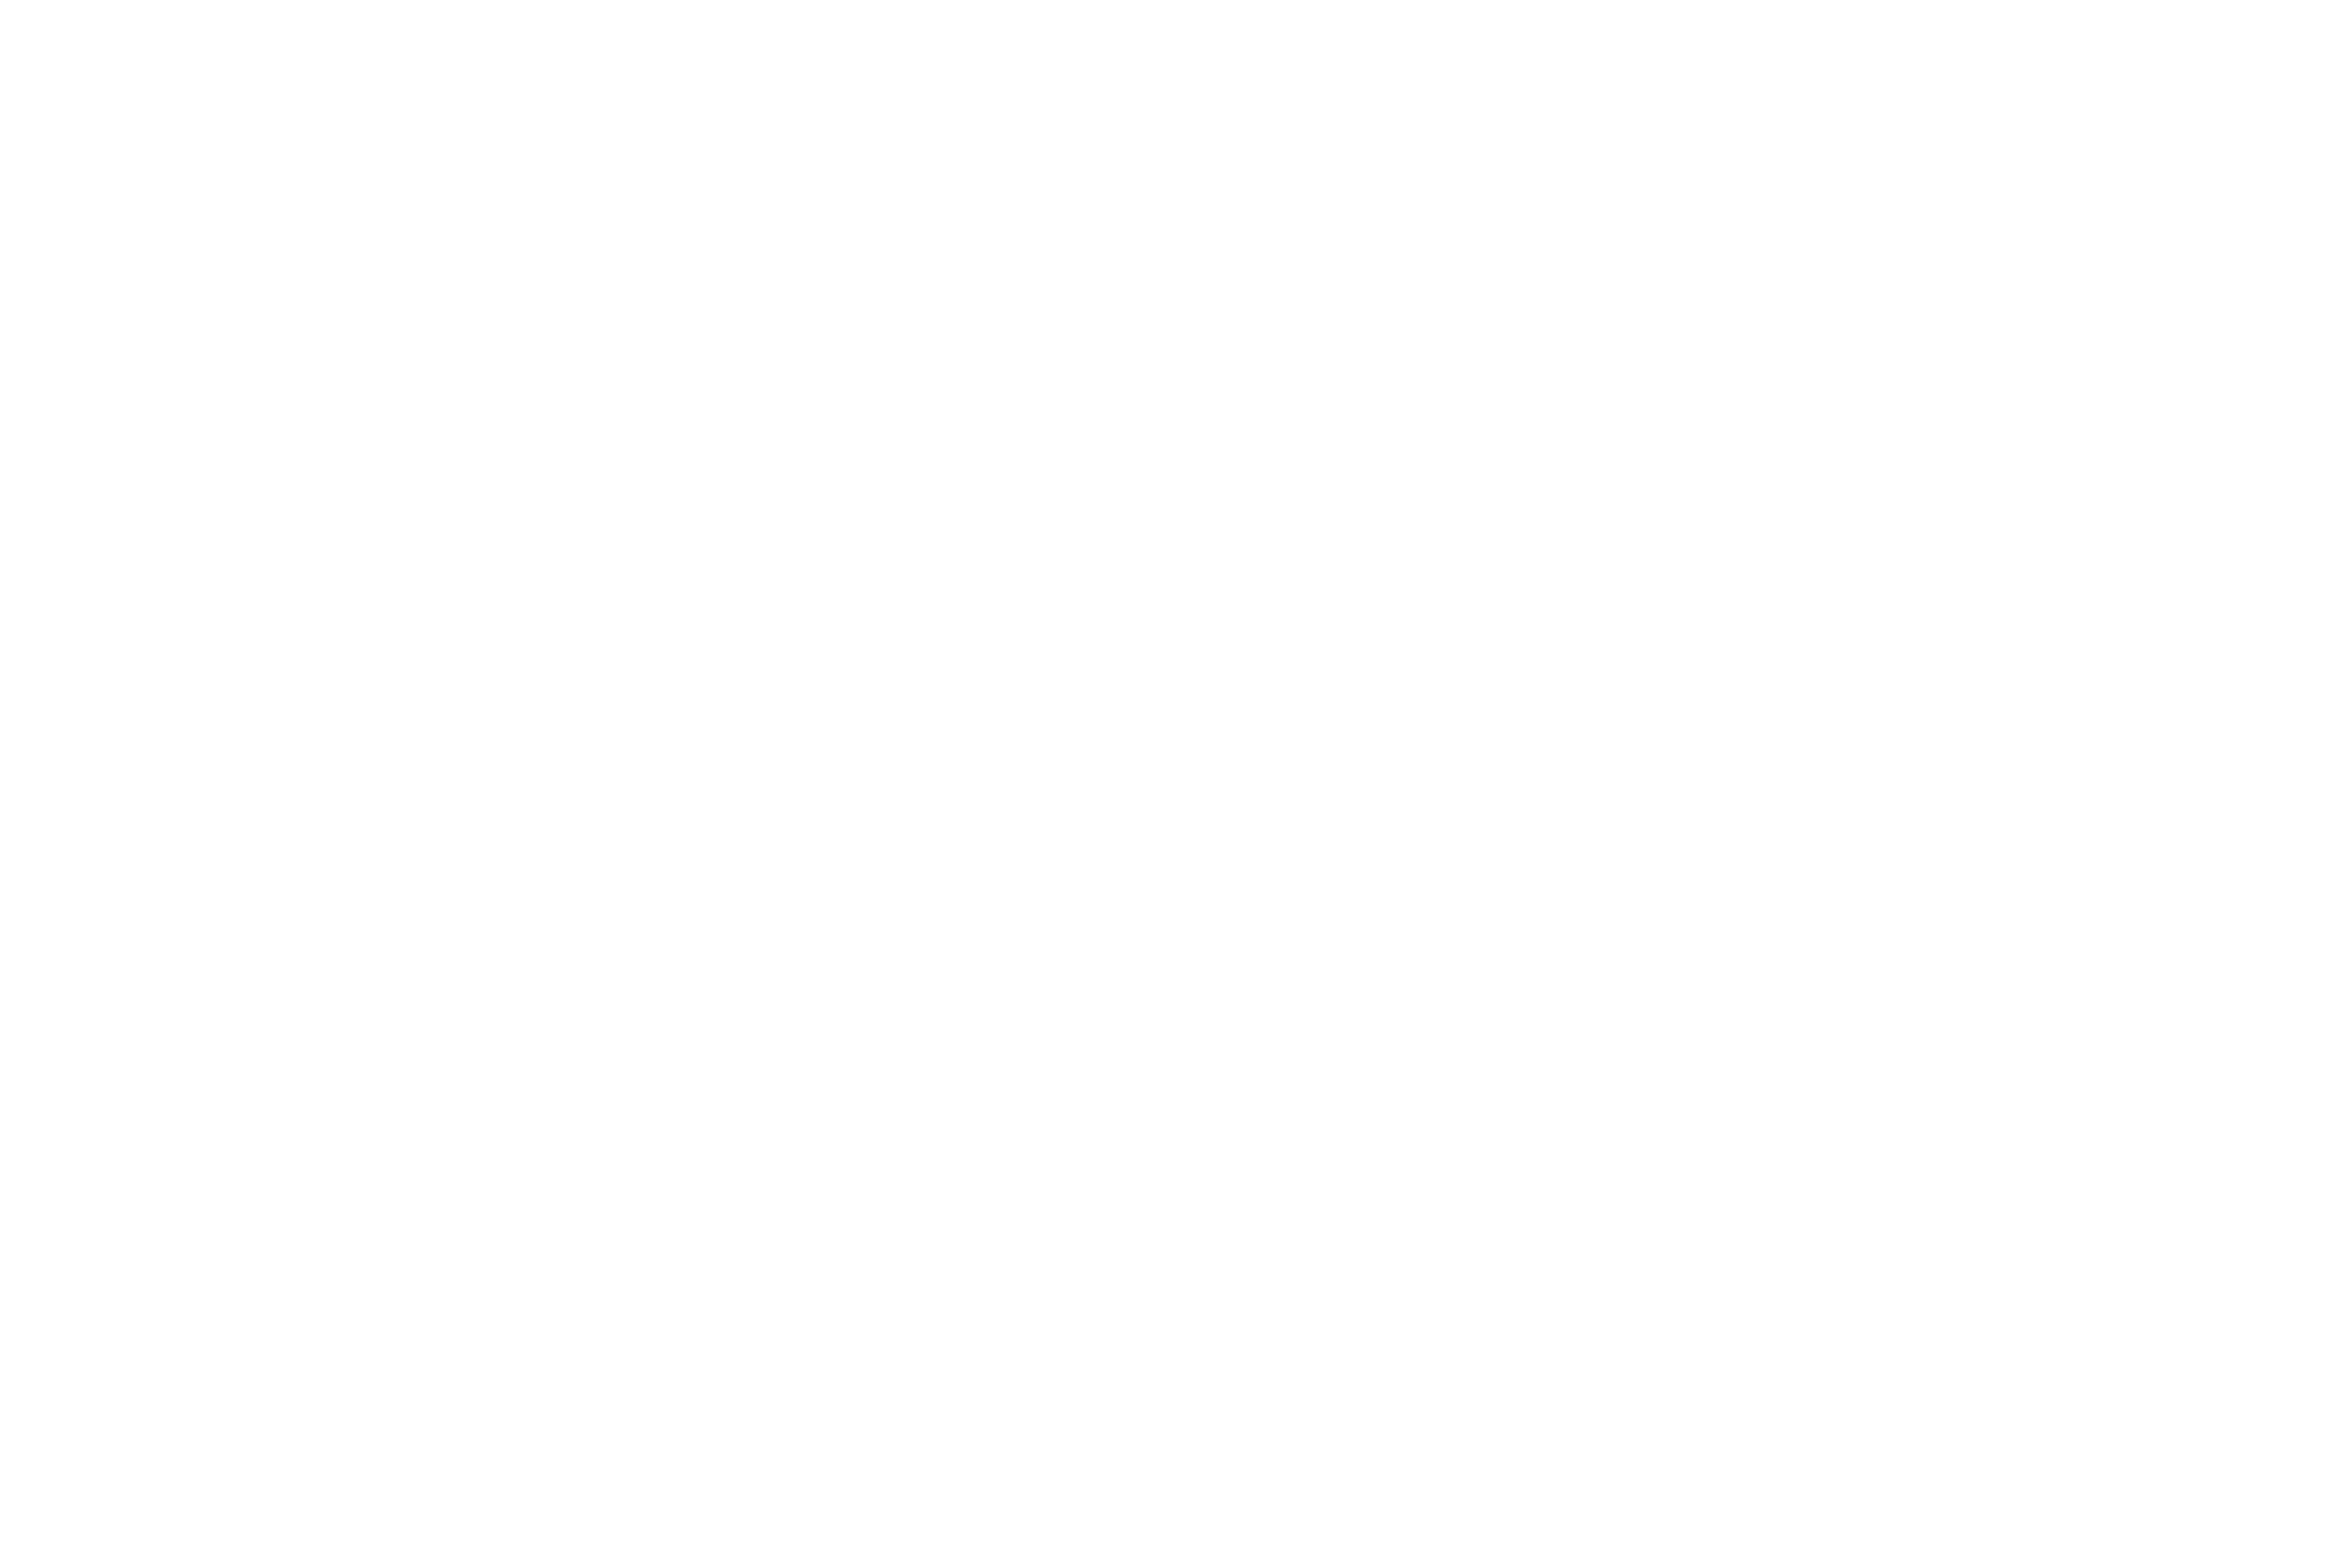 Betsey Johnson logo in white